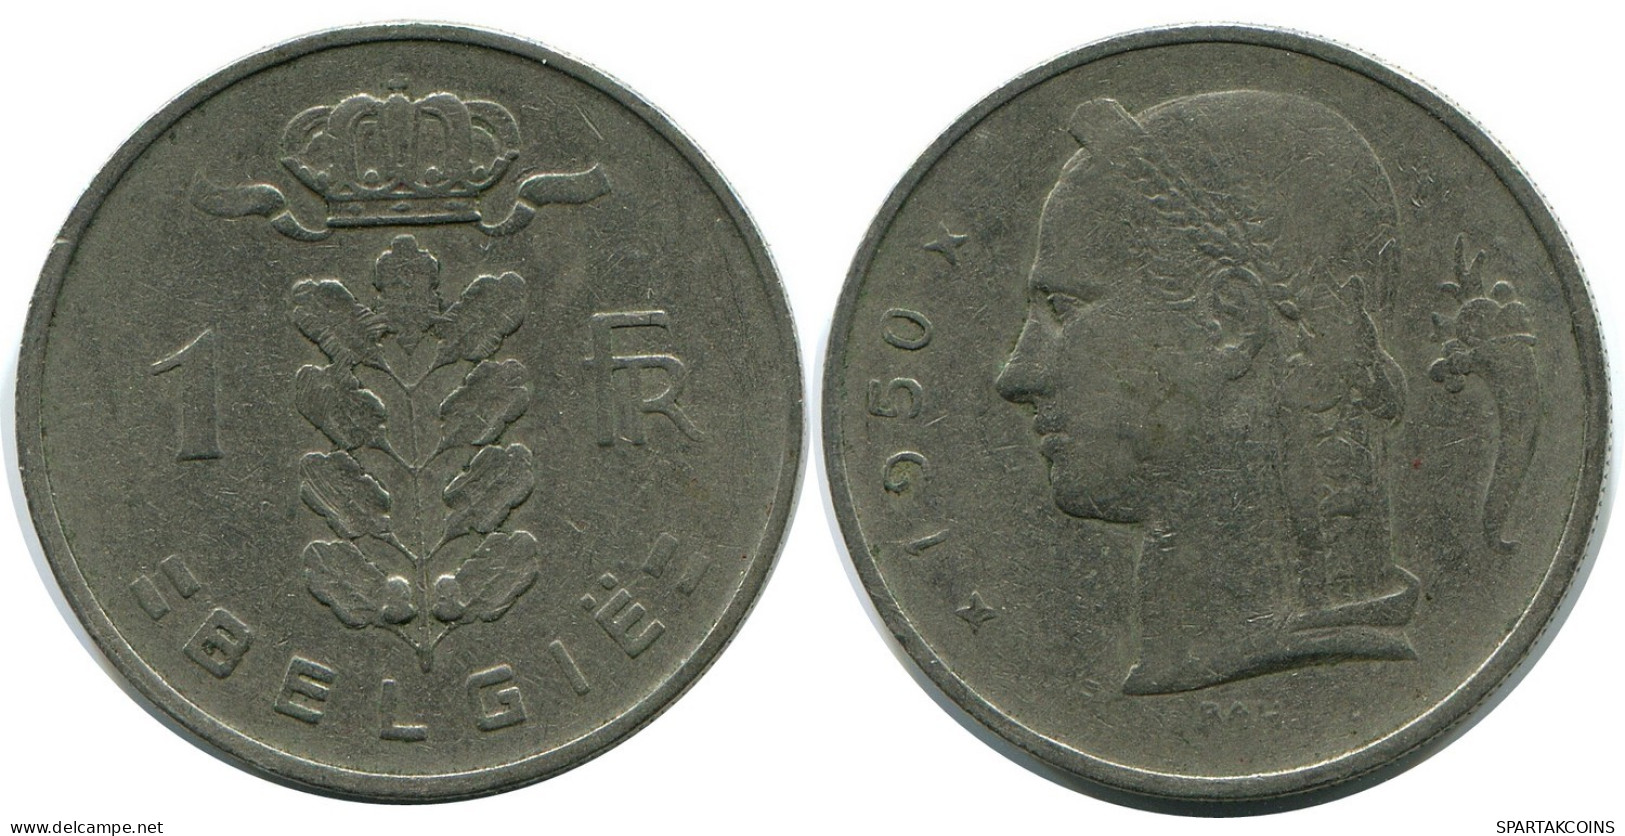 1 FRANC 1950 DUTCH Text BELGIUM Coin #AZ342.U.A - 1 Franc